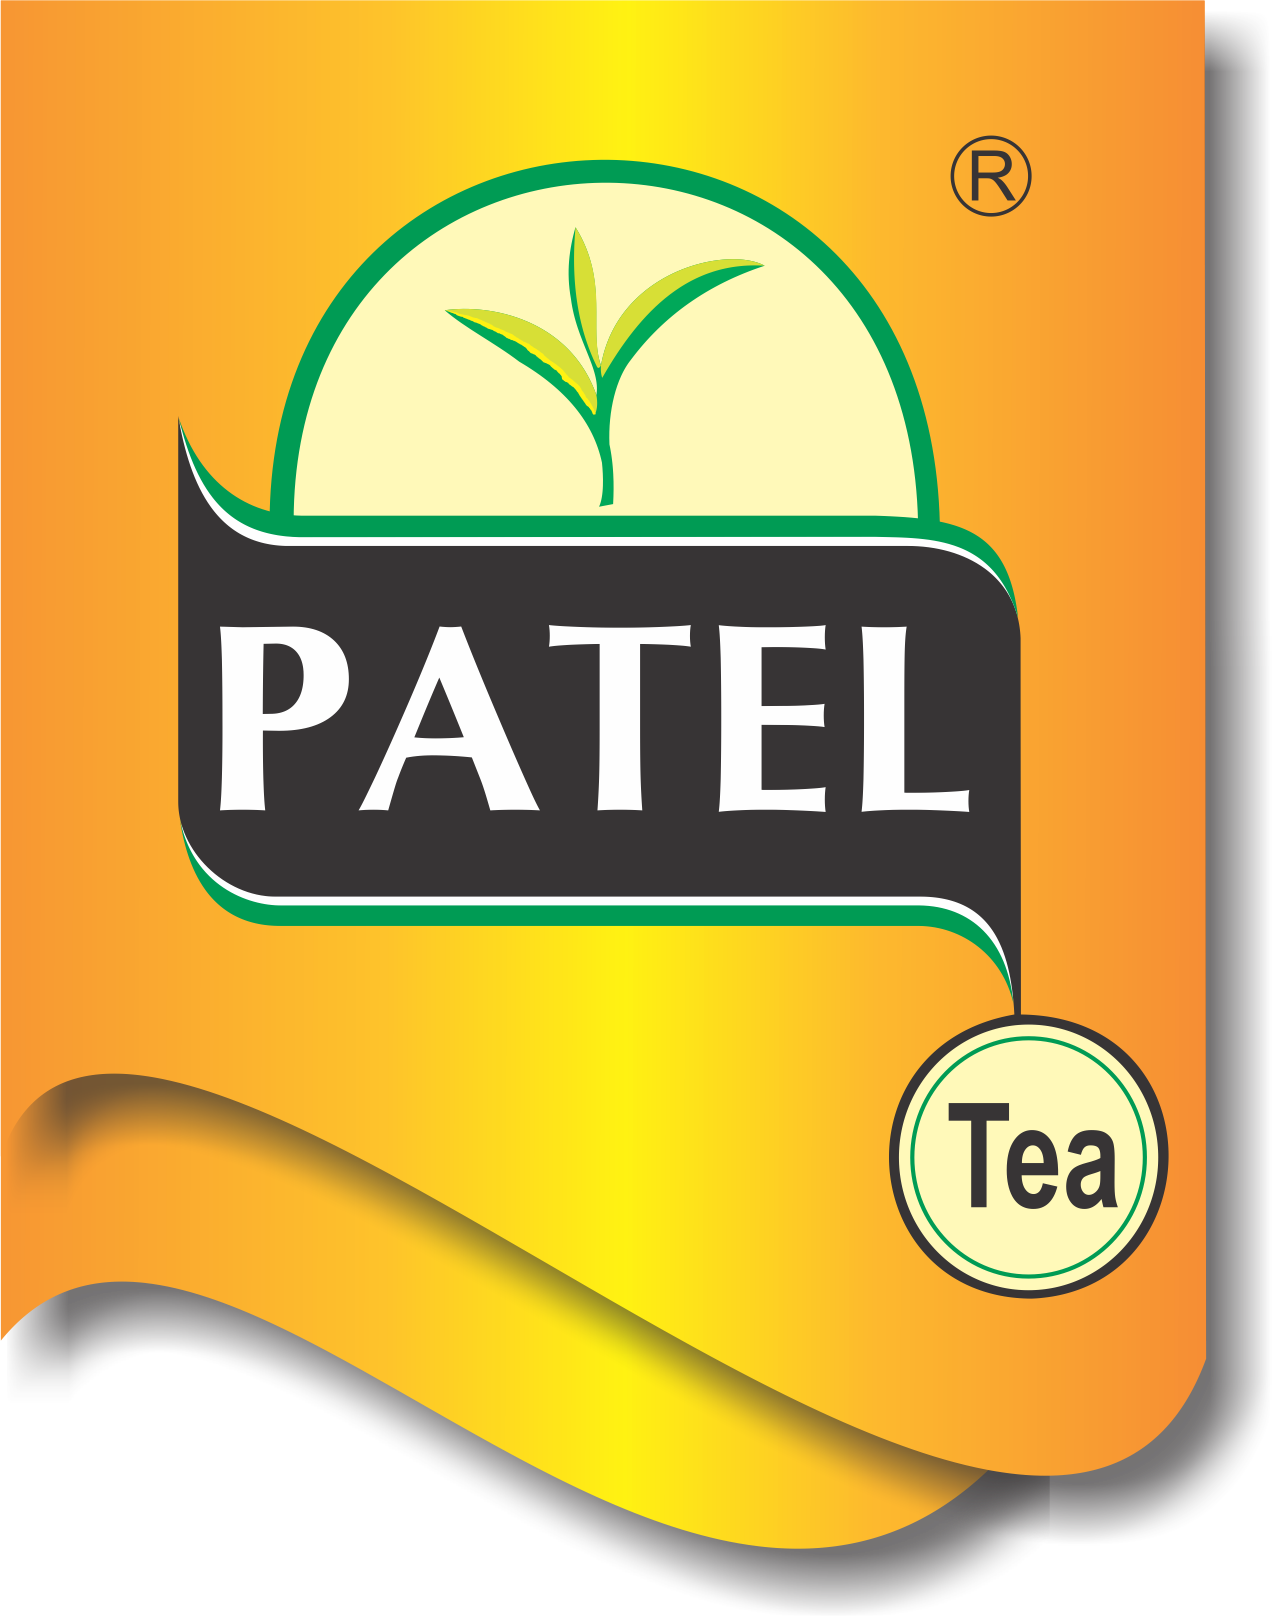 Patel Tea Packers